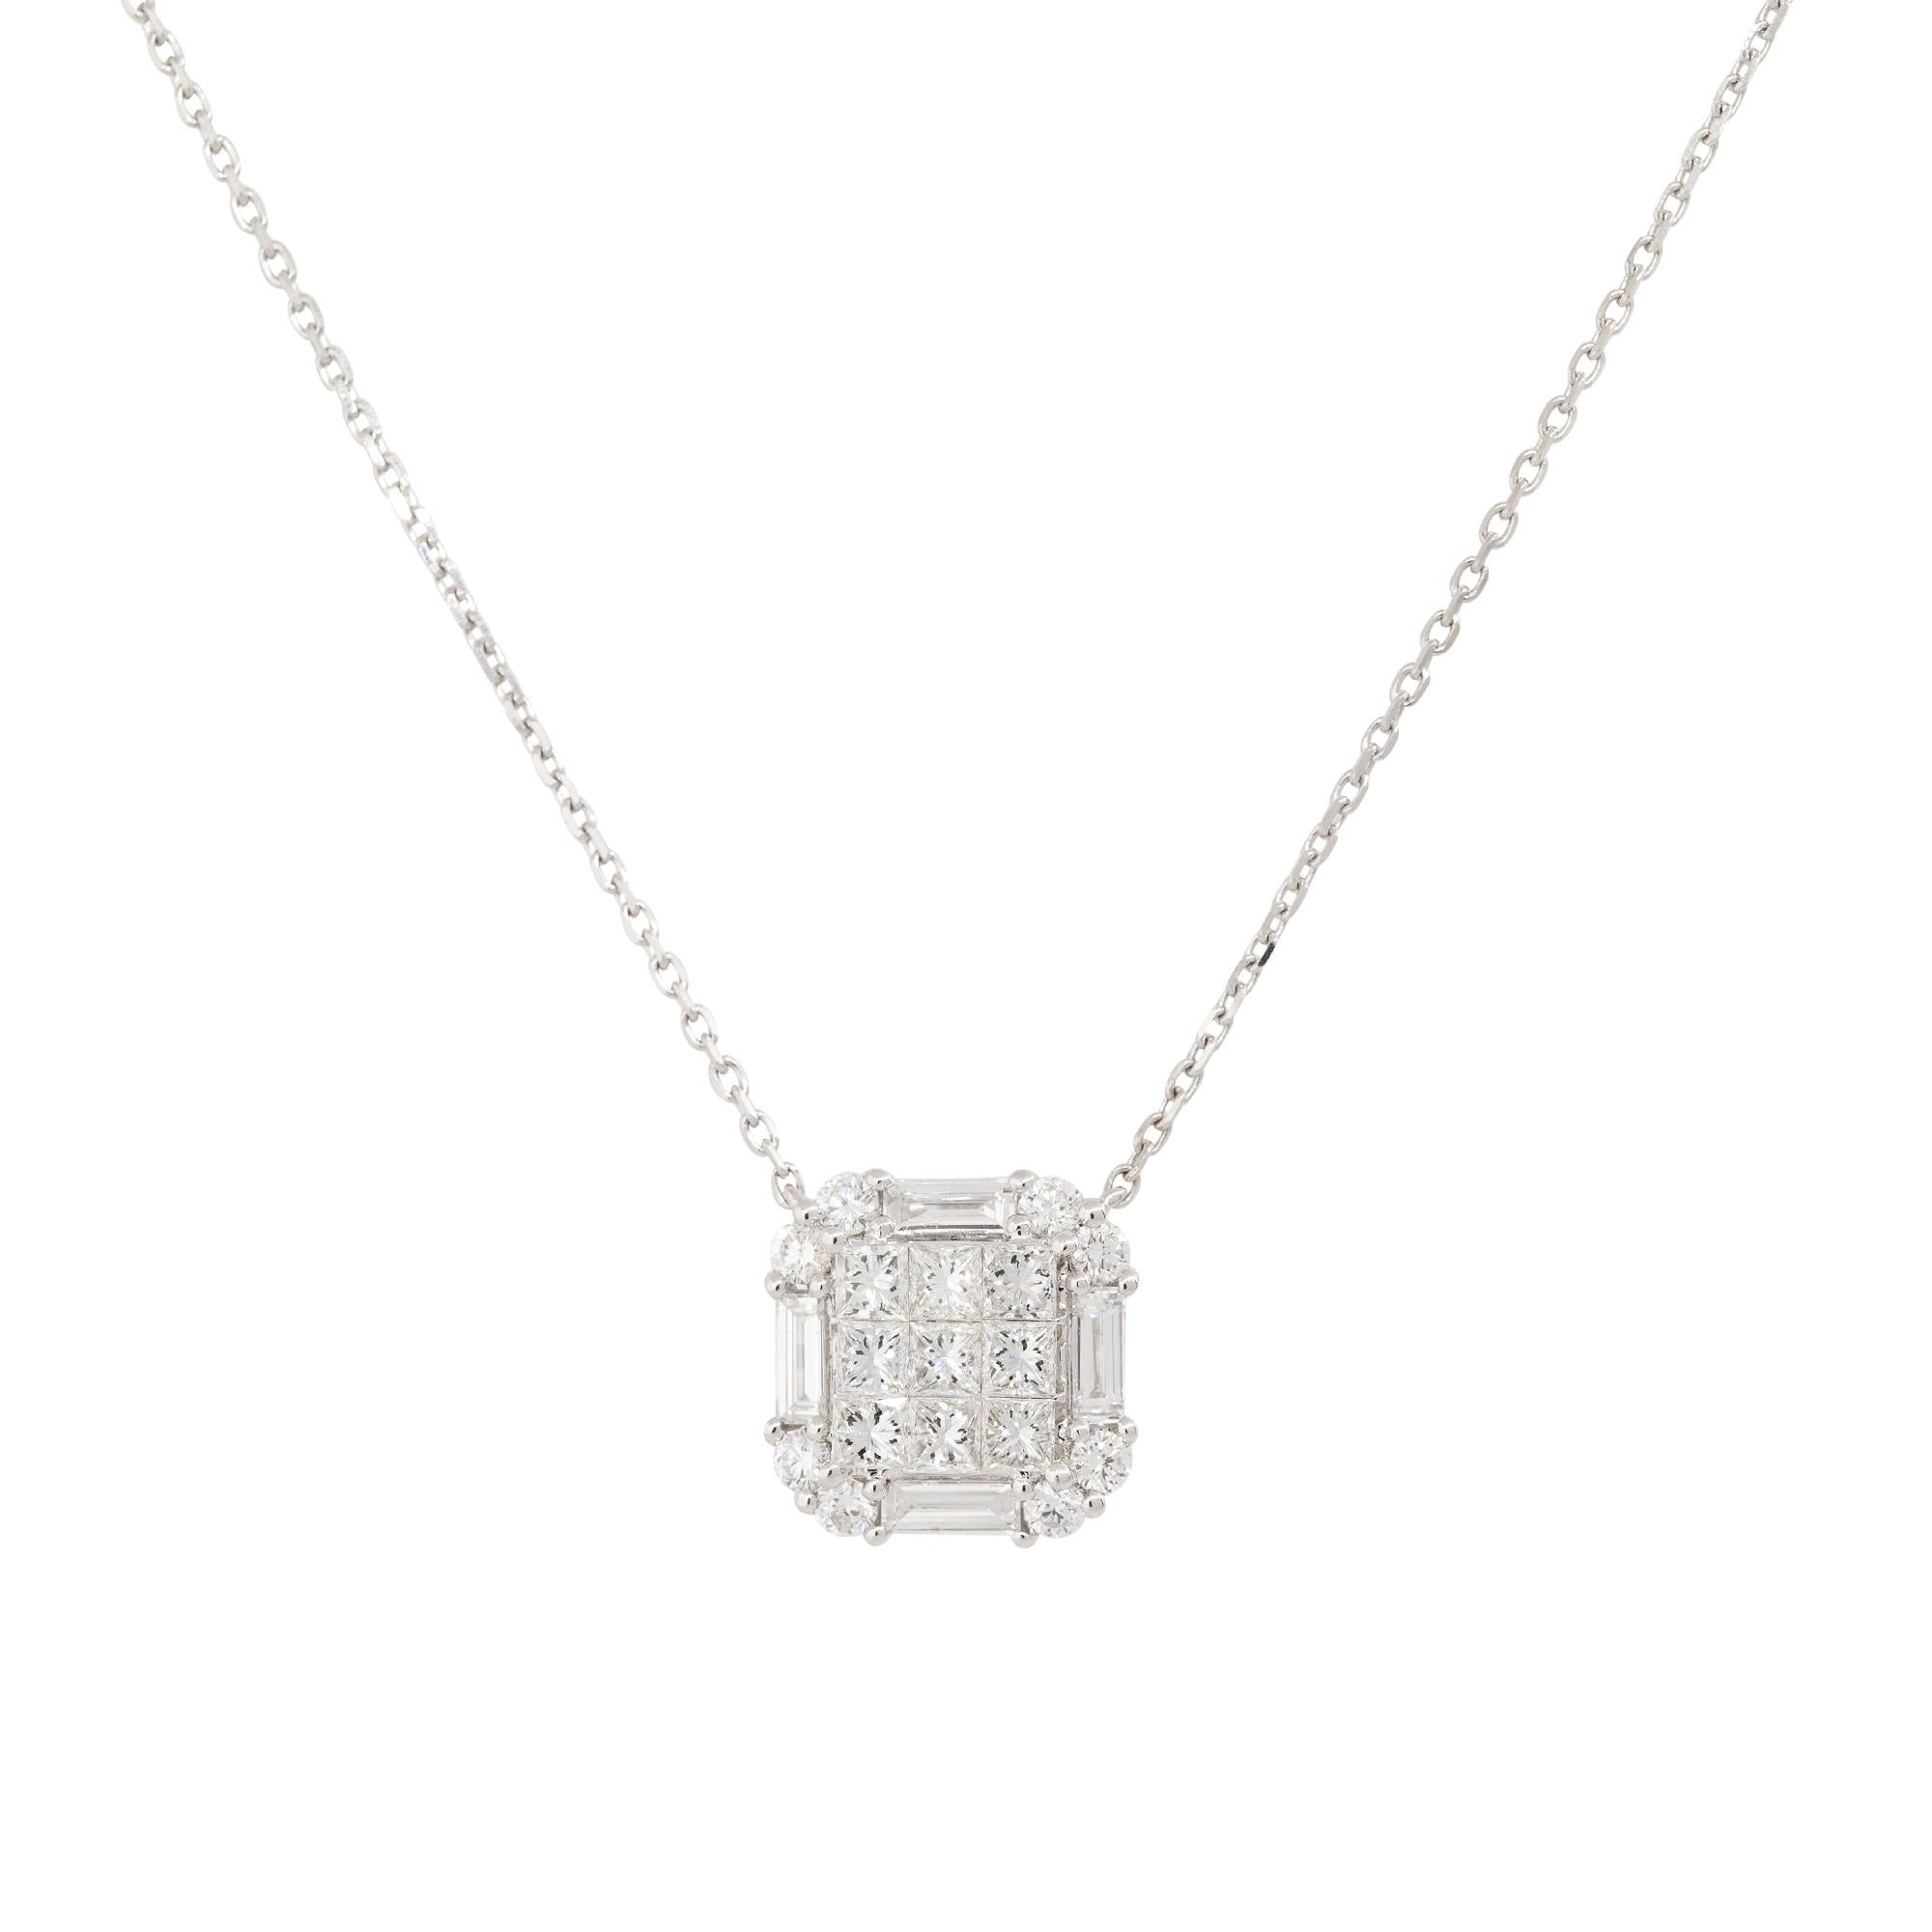 18k Weißgold 1,87ctw Princess Cut Diamant Anhänger Halskette
MATERIAL: 18k Weißgold
Diamant-Details: Es gibt ungefähr 1.87 Karat unsichtbar gefasste Diamanten. In der Mitte des Anhängers befinden sich Diamanten im Prinzessinnenschliff, umgeben von